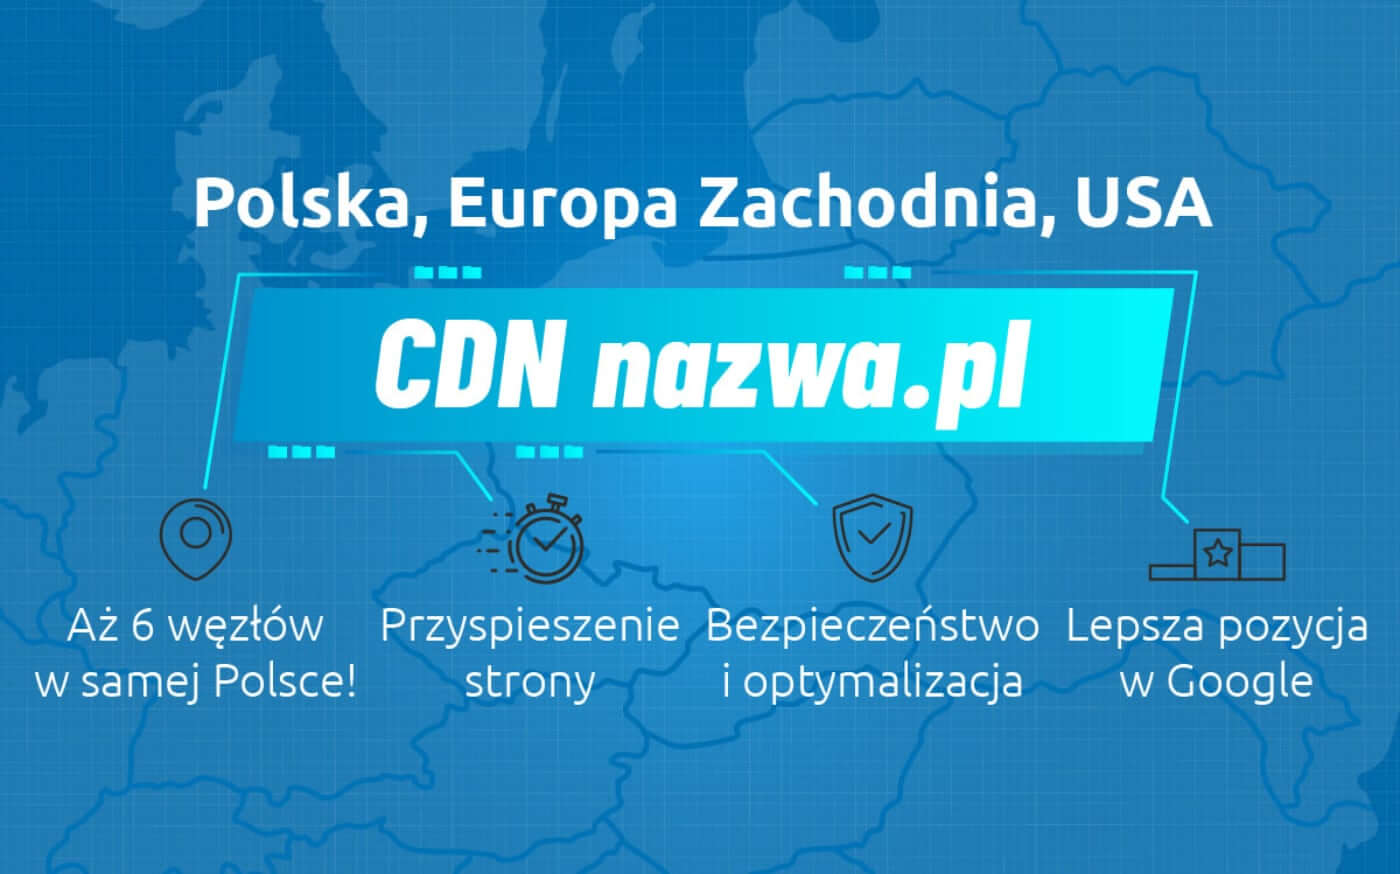 Sieć CDN nazwa.pl dostępna dla wszystkich